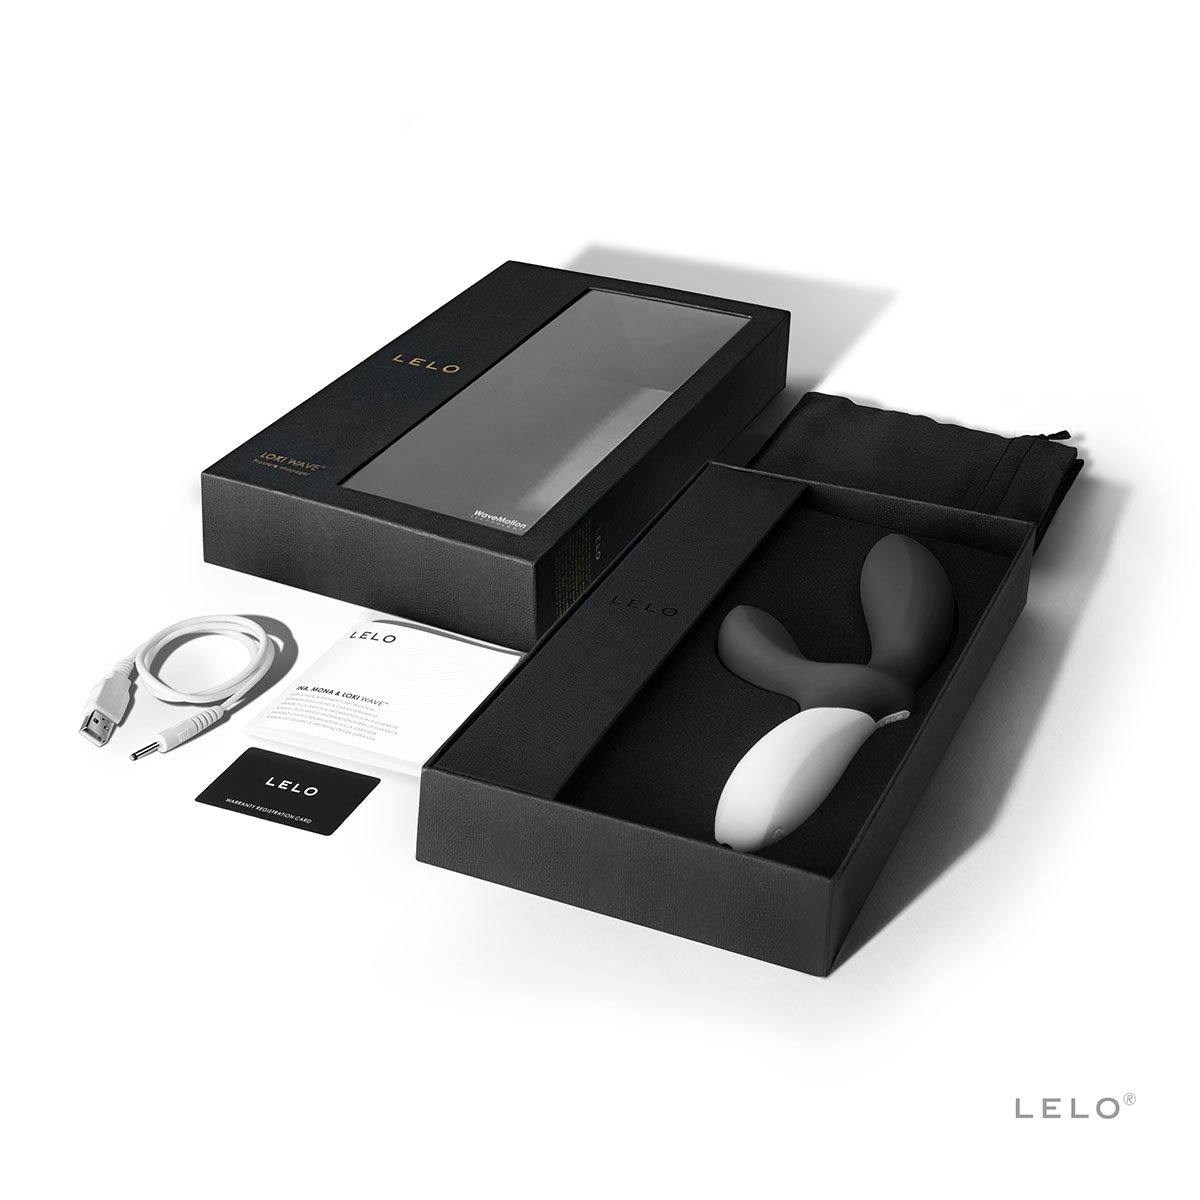 Lelo Loki Wave - Buy At Luxury Toy X - Free 3-Day Shipping